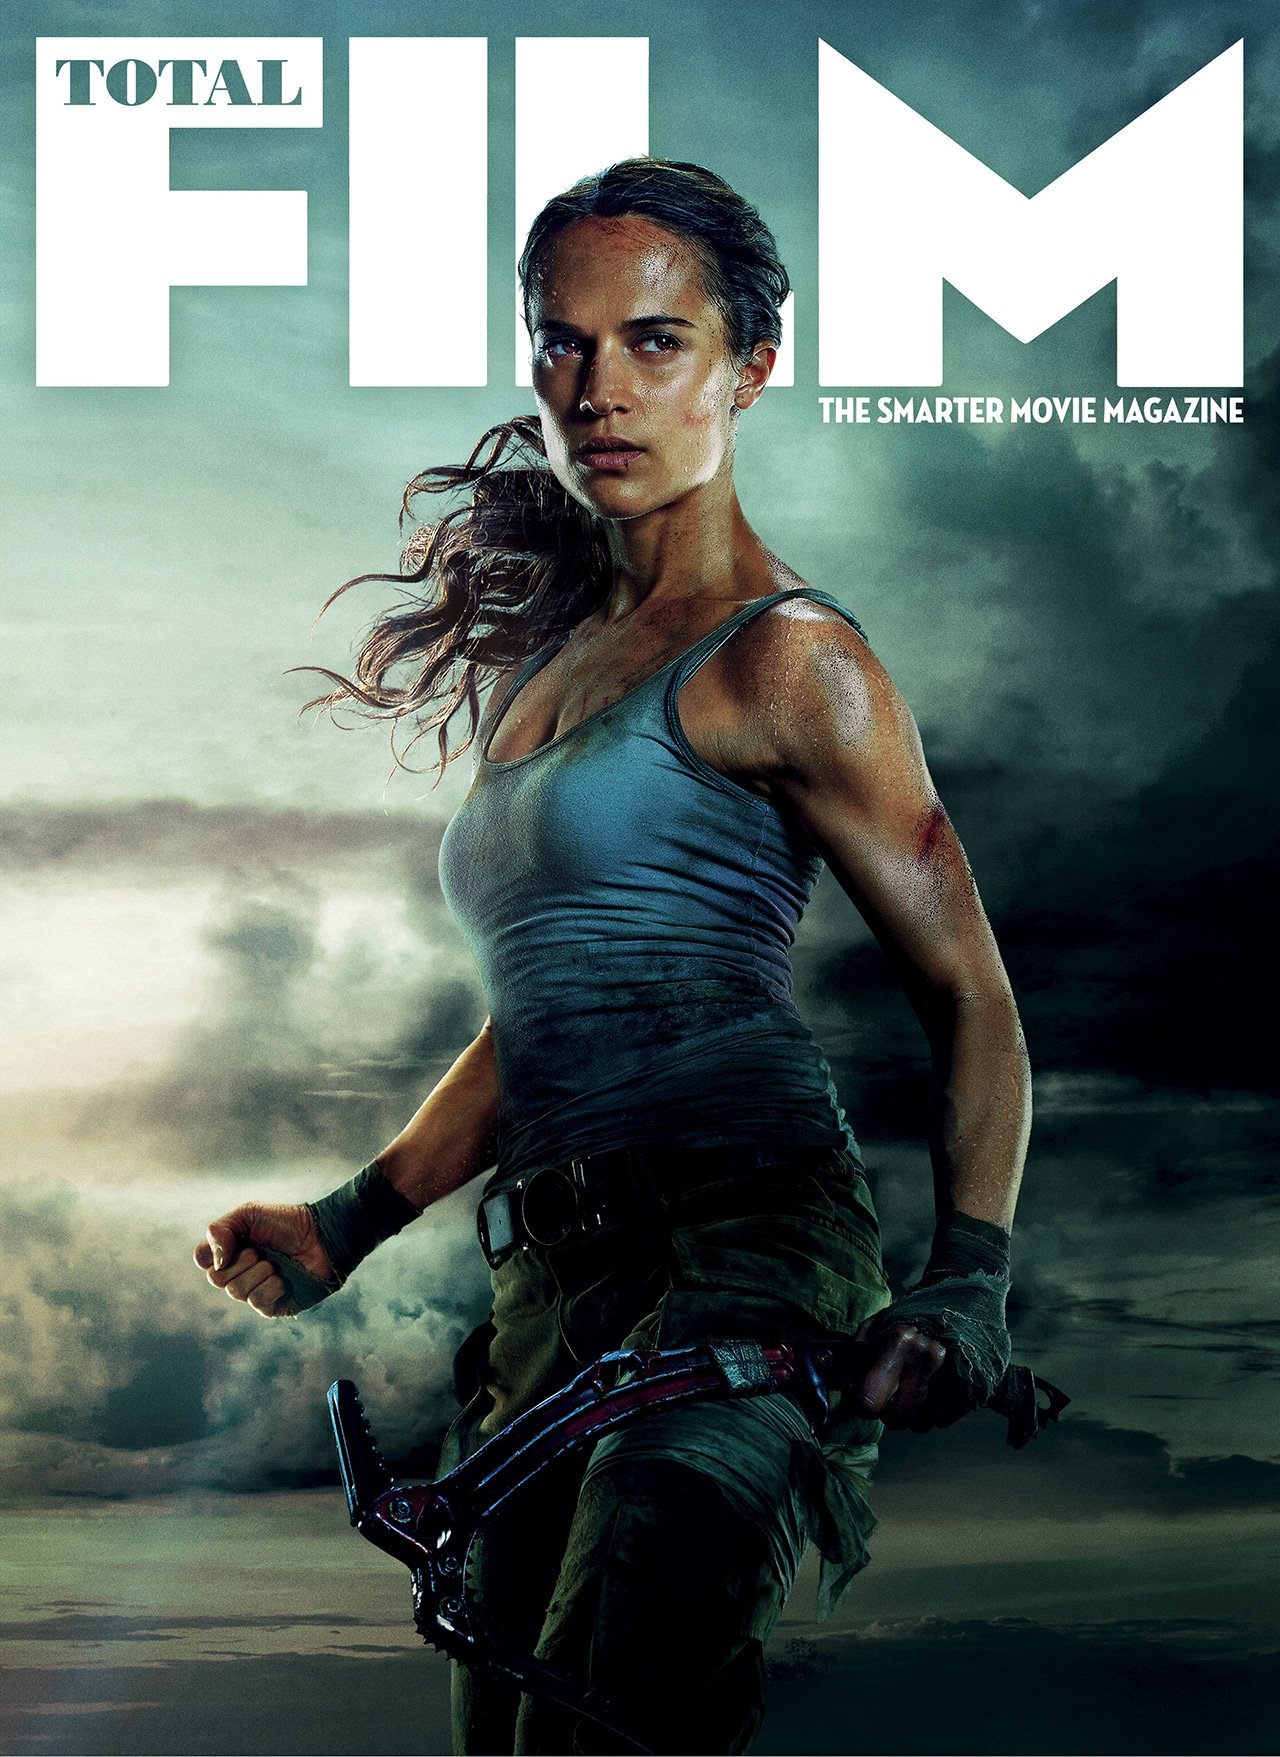 Tomb Raider: A Origem - 15 de Março de 2018